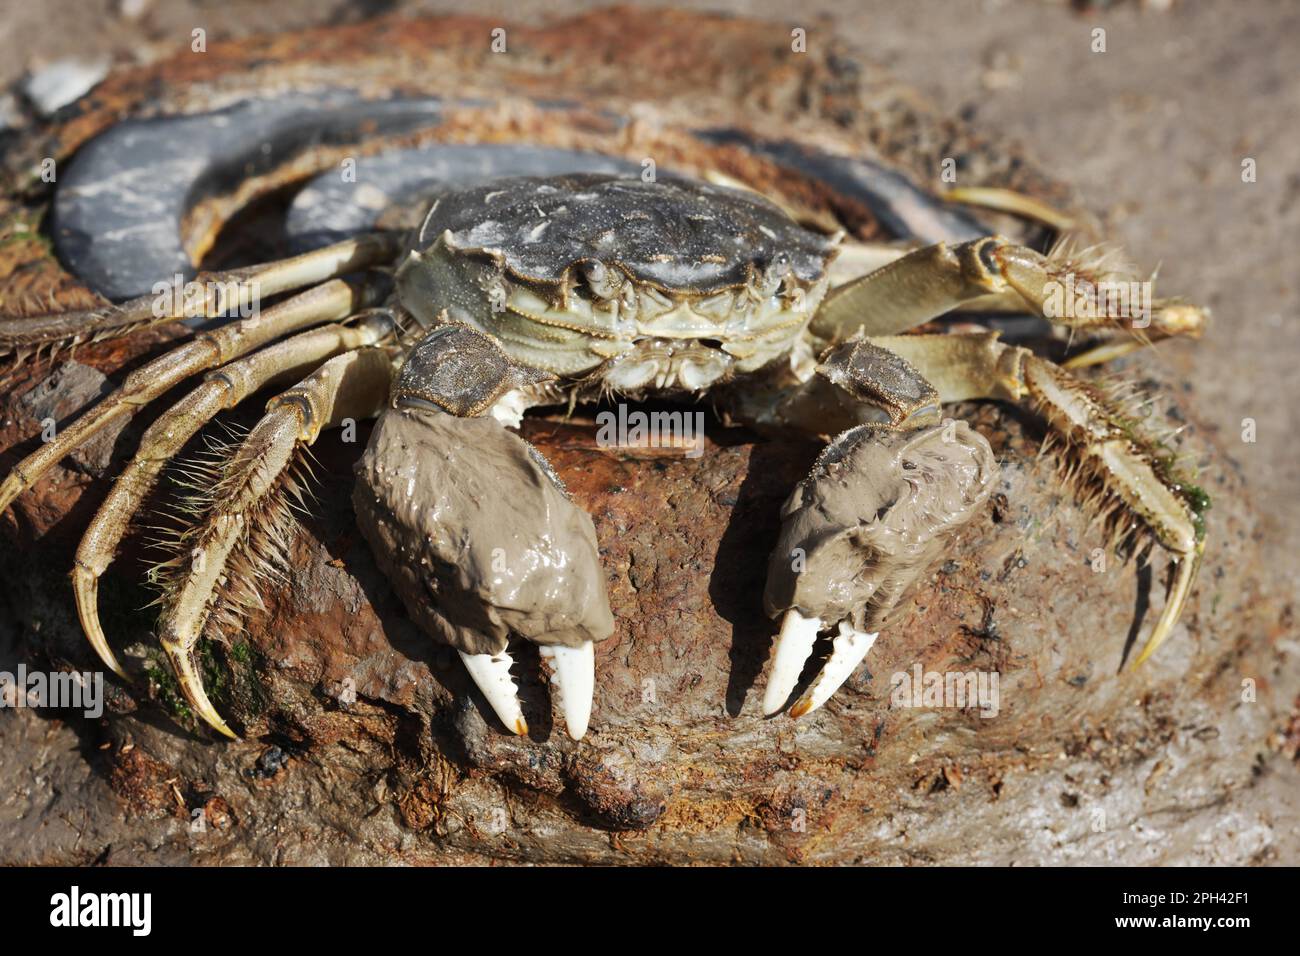 Le crabe chinois Mitten (Eriocheir sinensis) introduit des espèces, adultes, avec de la boue sur les griffes, sur la rive, la Tamise, Londres, Angleterre, Royaume-Uni Banque D'Images